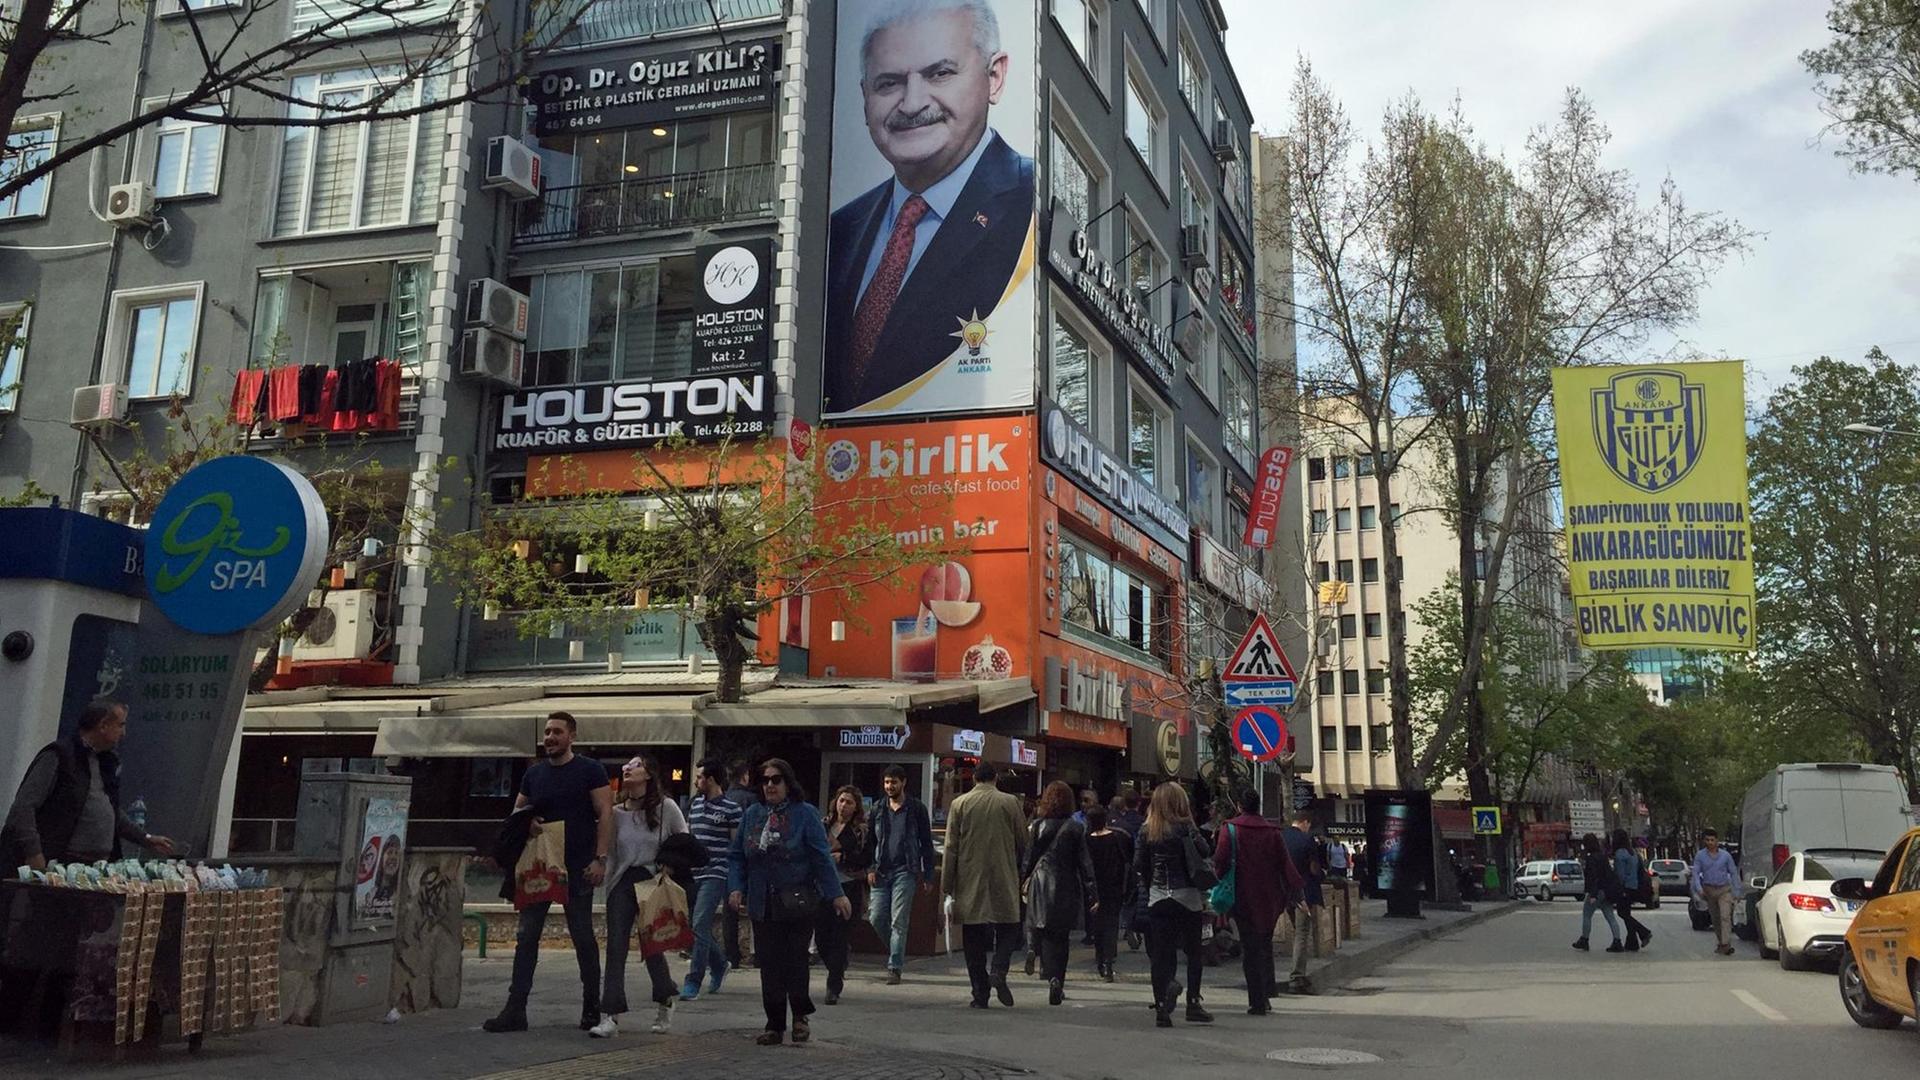 Im Bild sieht man eine Straßenszene in Ankara